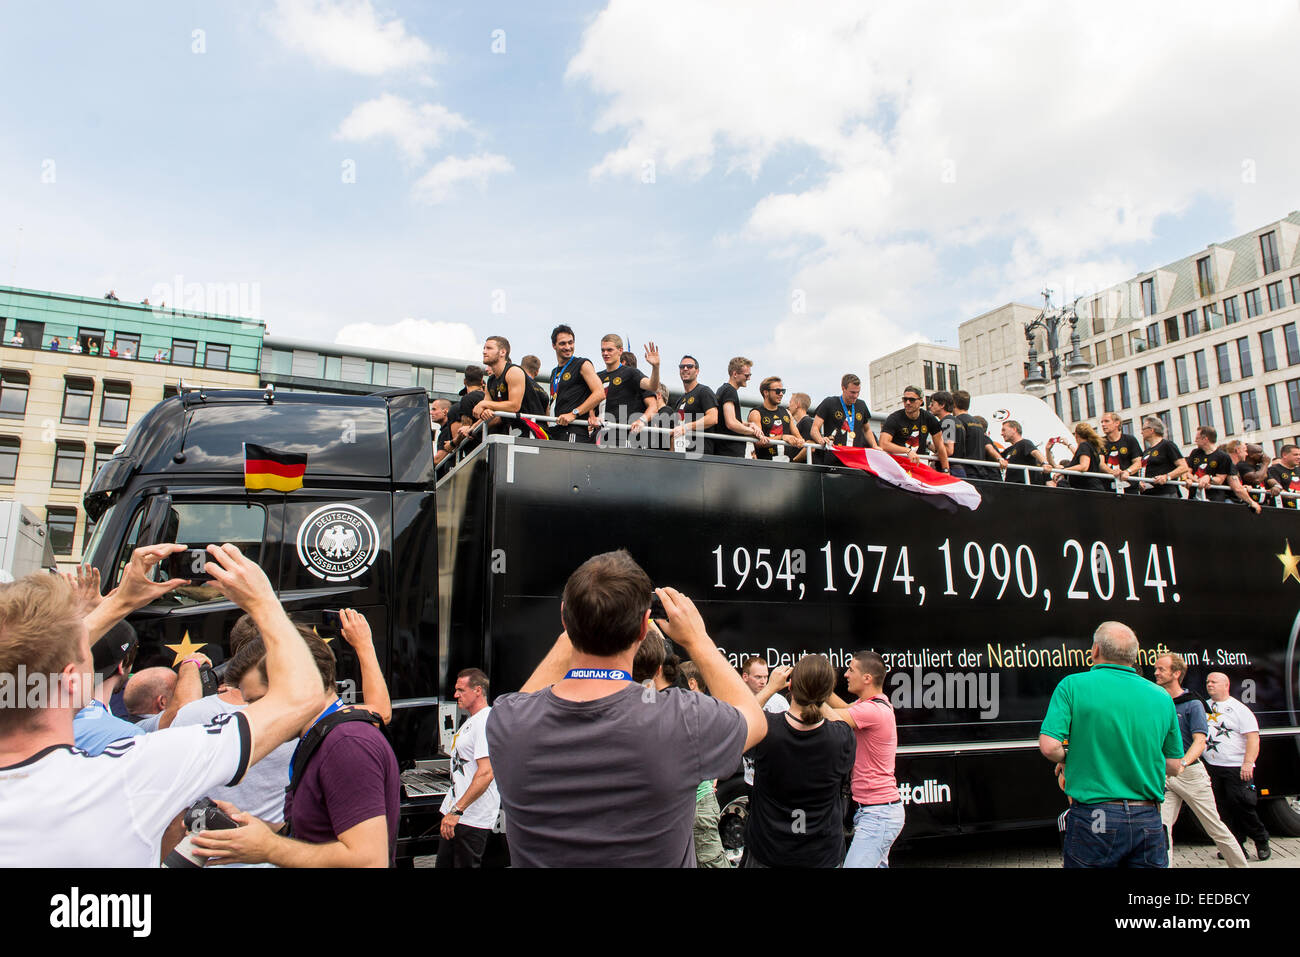 Berlín, Alemania, la llegada del equipo nacional alemán Foto de stock